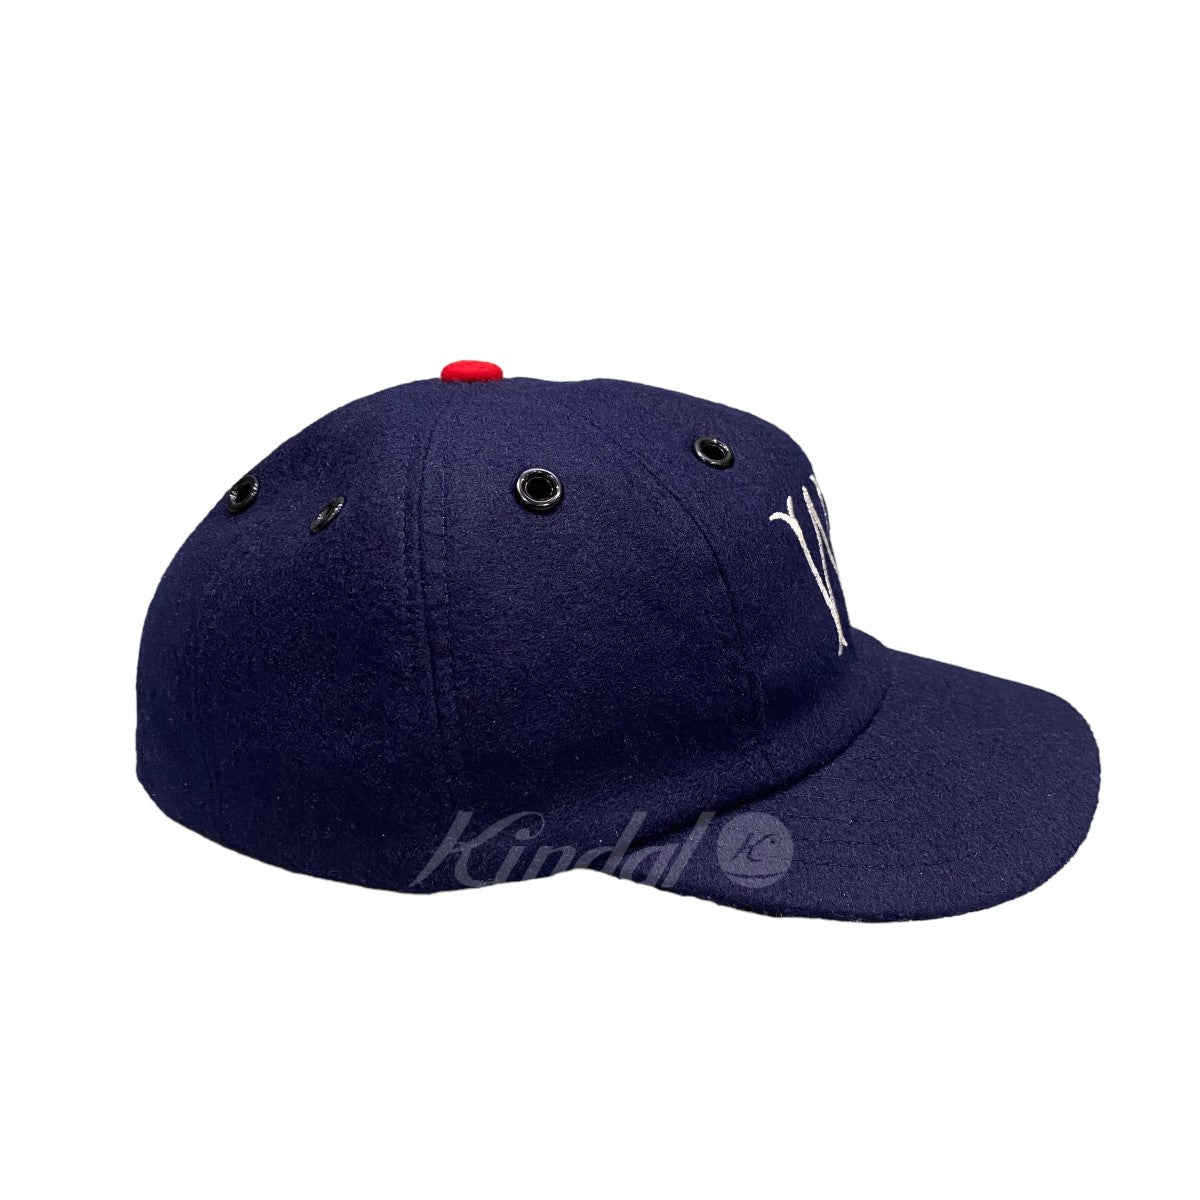 WTAPS(ダブルタップス) LEAGUE CAP ウール調素材 ロゴ刺繍ベースボール 